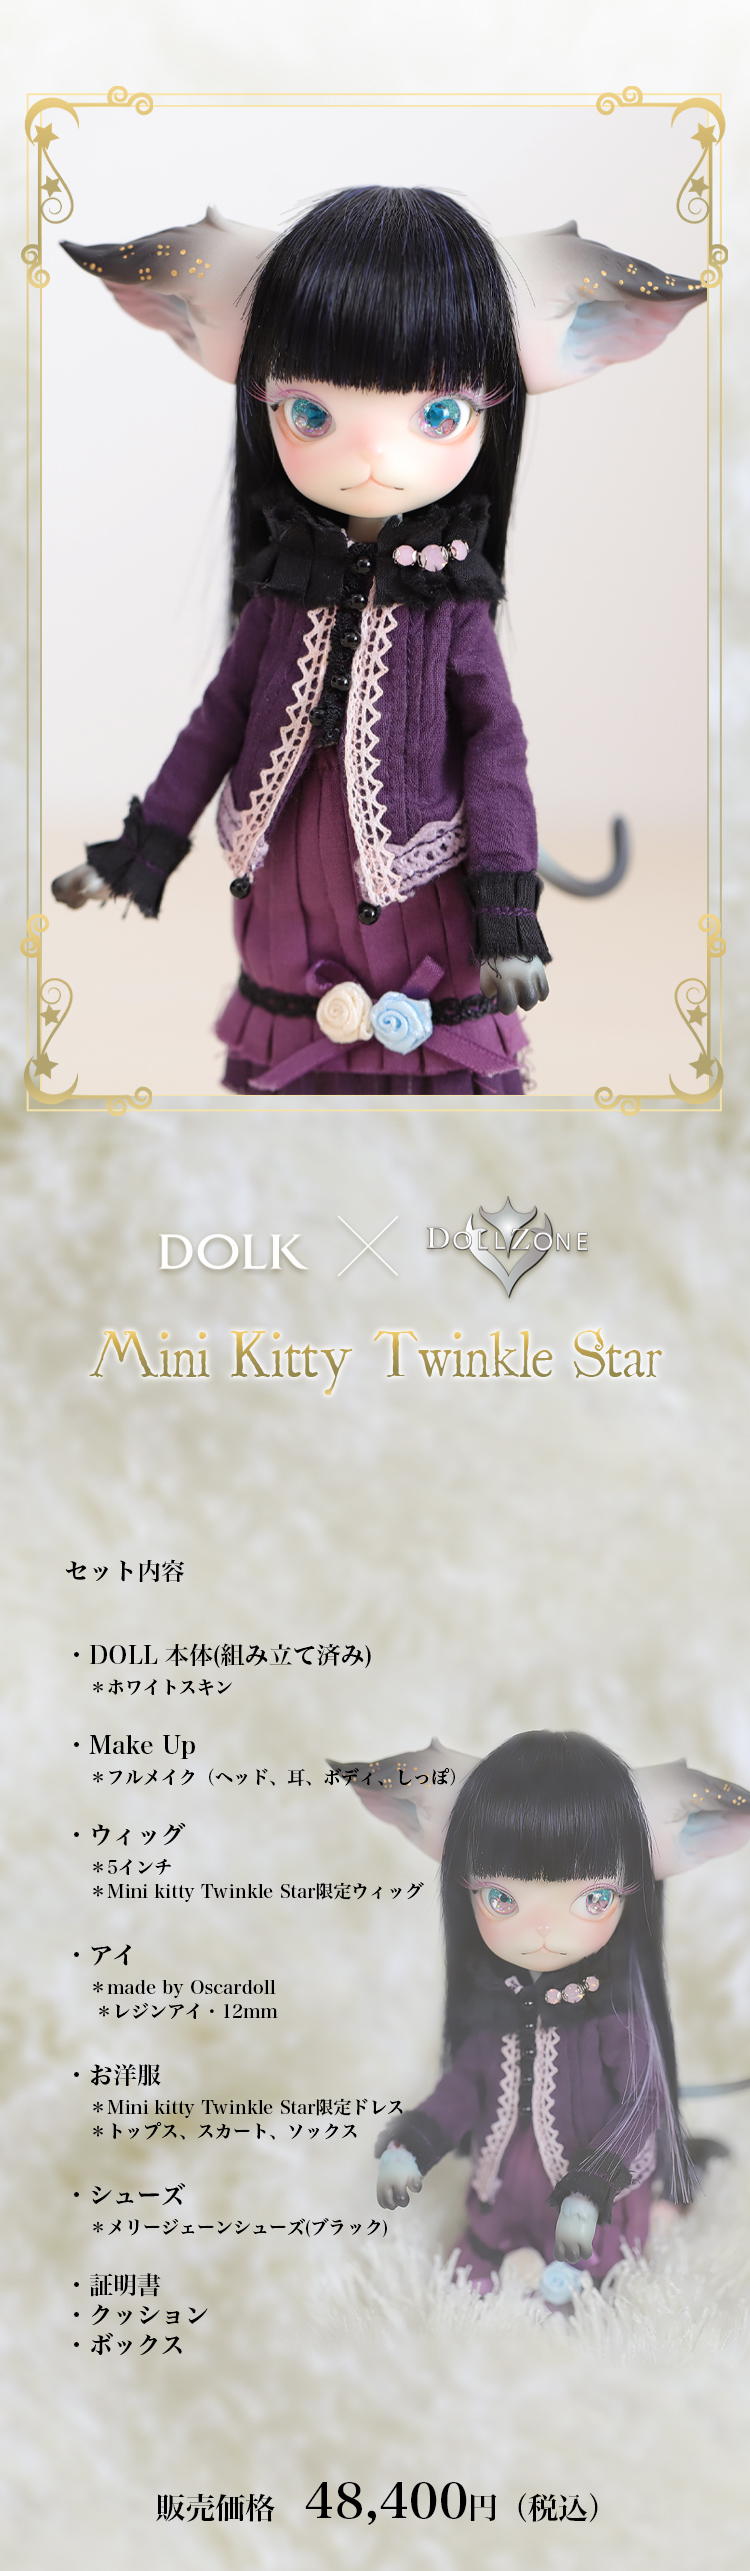 世界的に ミニキティ DOLL ZONE DOLK Mini Kitty Twinkle thecarestaff.com